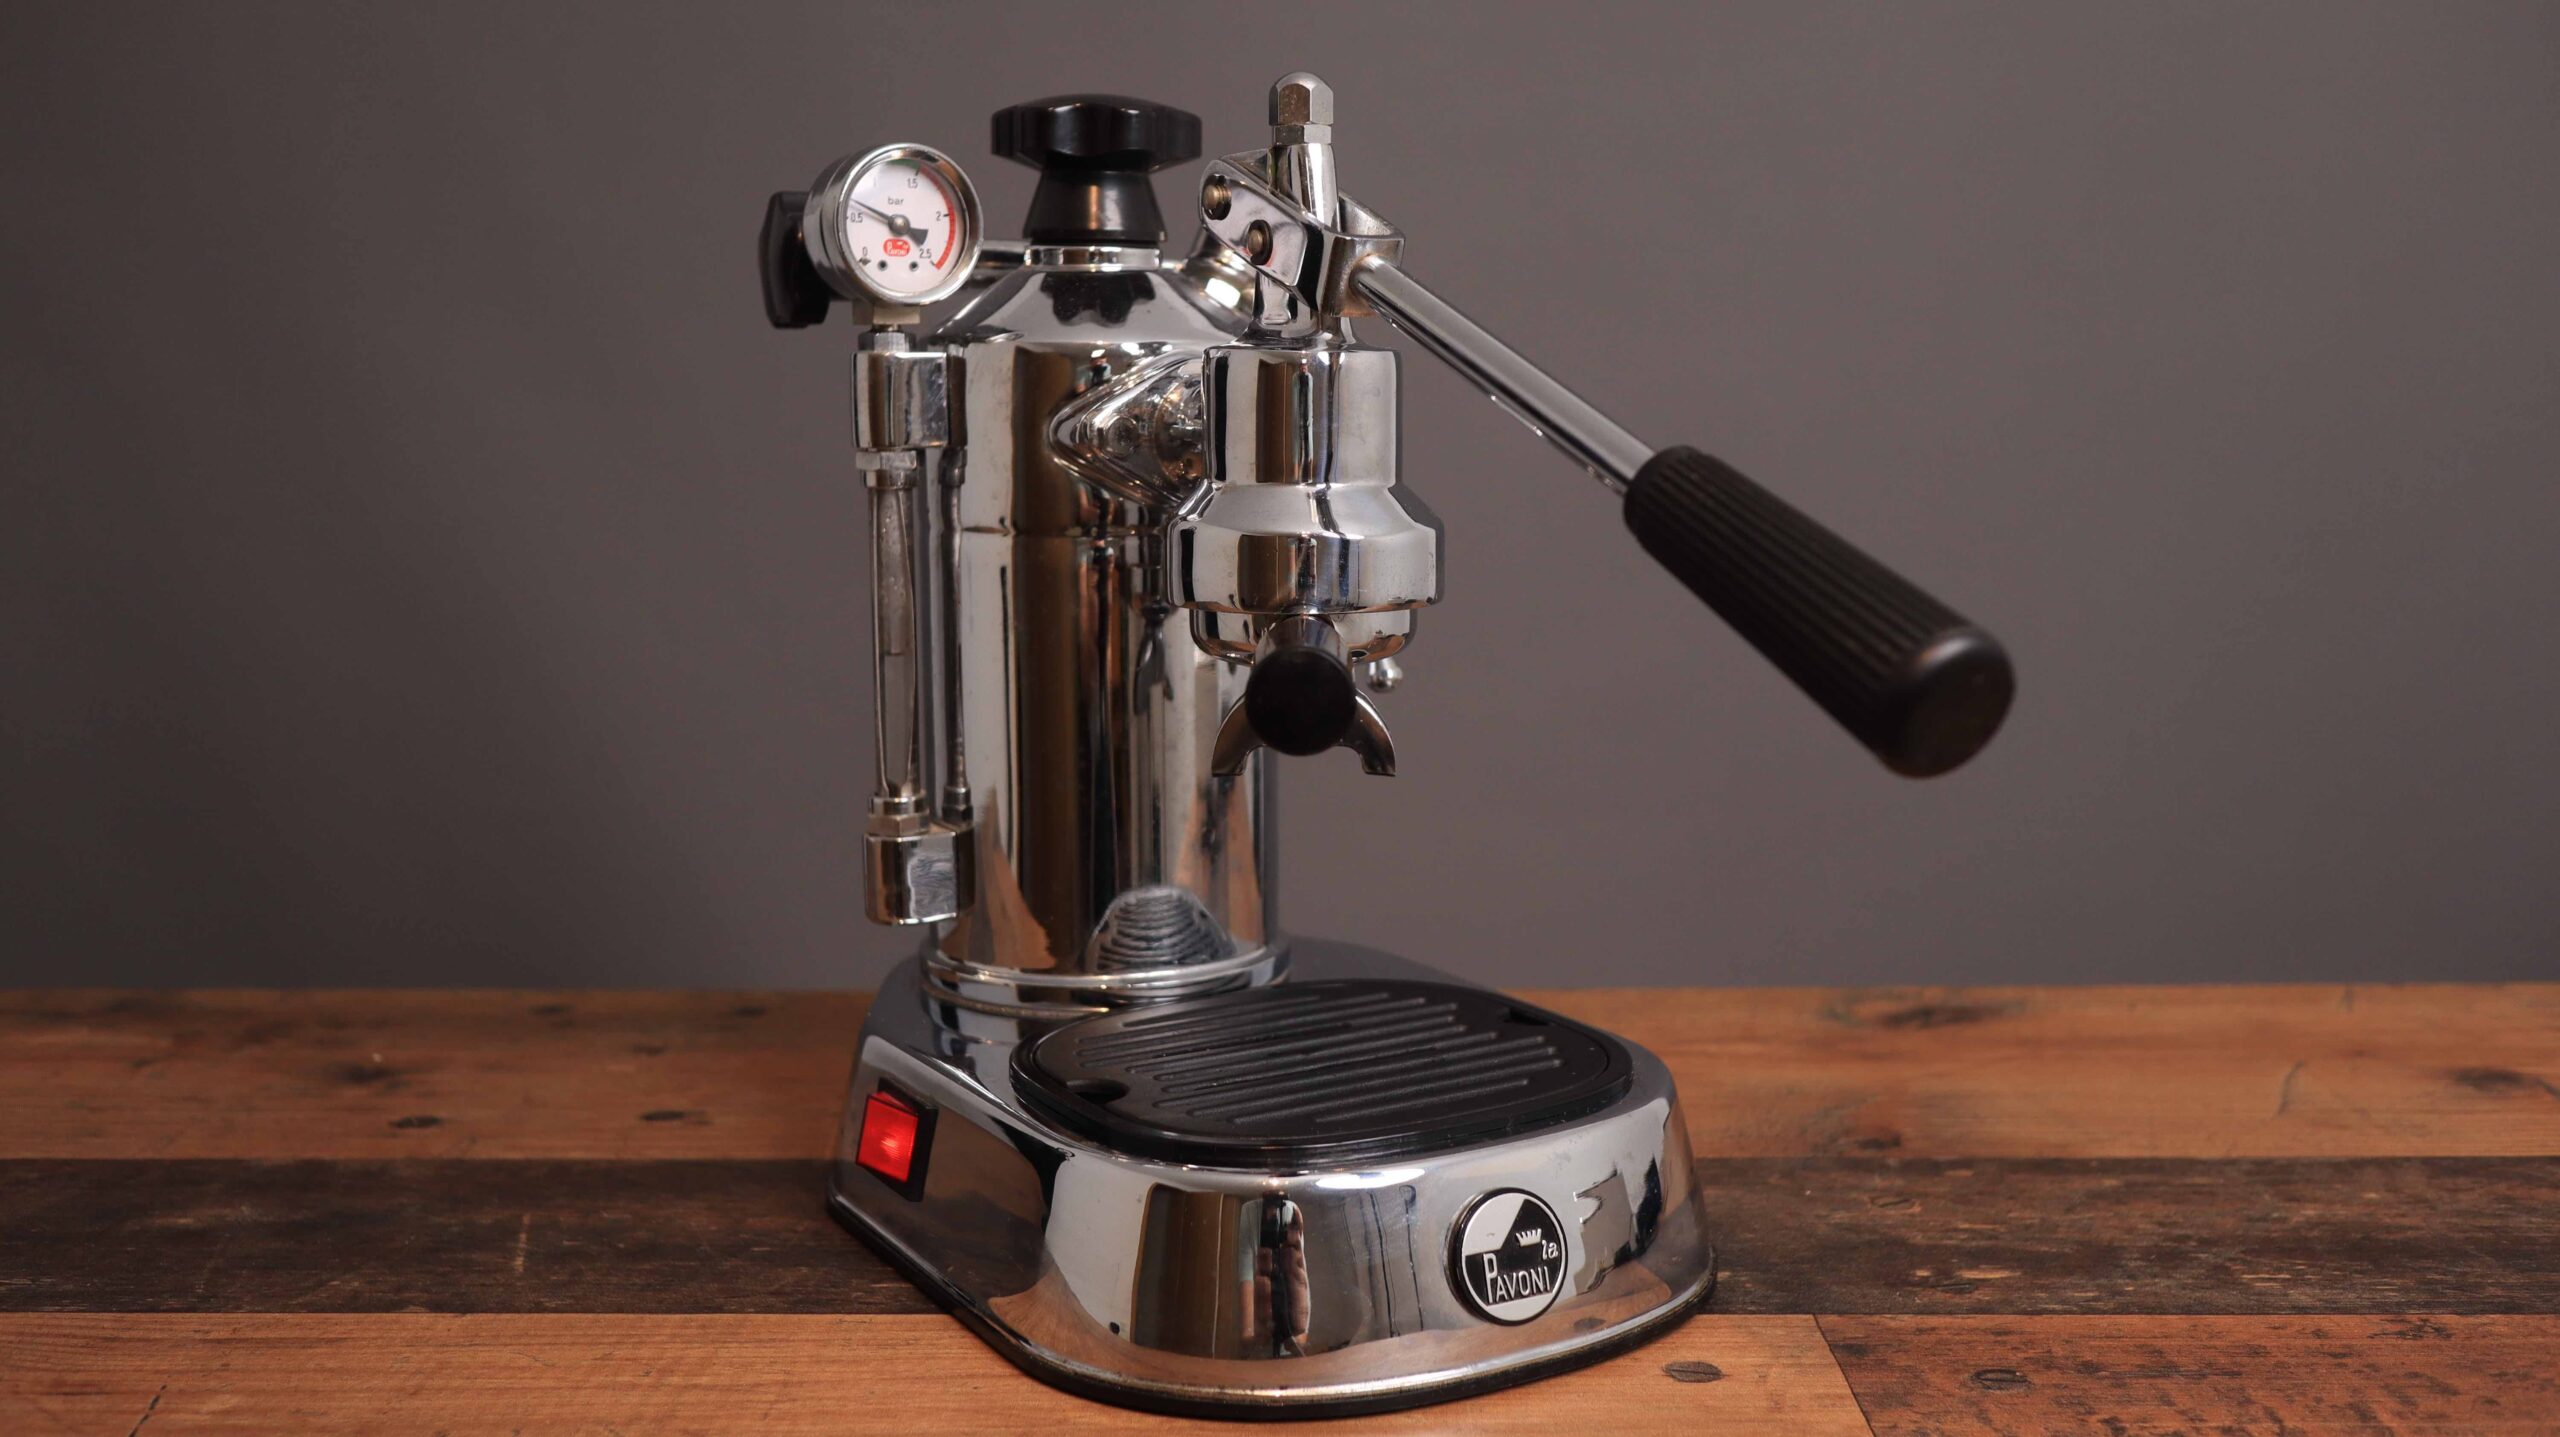 La Pavoni lever espresso machine